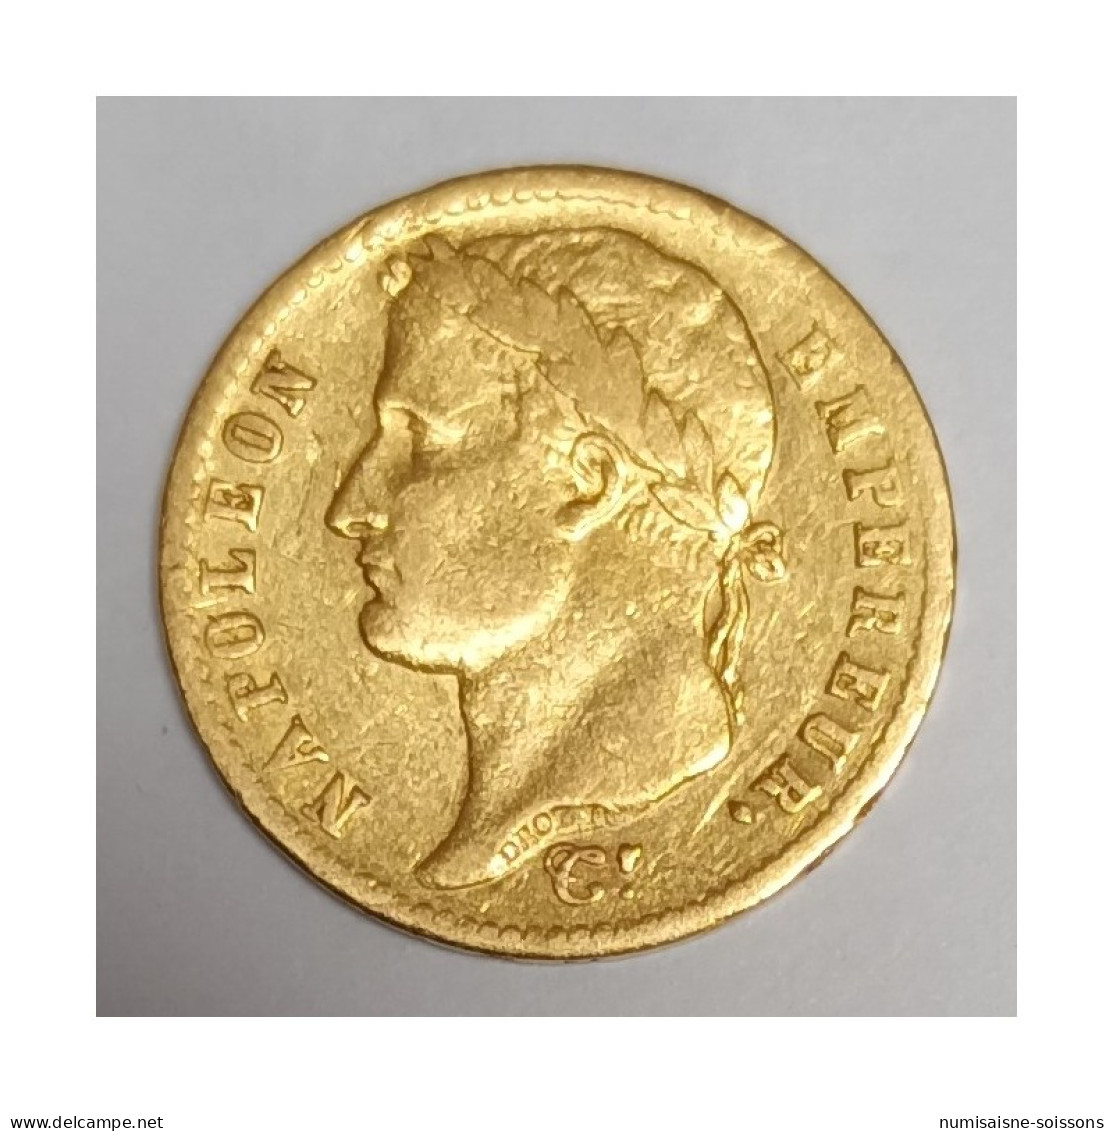 GADOURY 1025 - 20 FRANCS 1812 A - Paris - OR - NAPOLEON - REVERS EMPIRE - KM 695 - TTB - 20 Francs (gold)